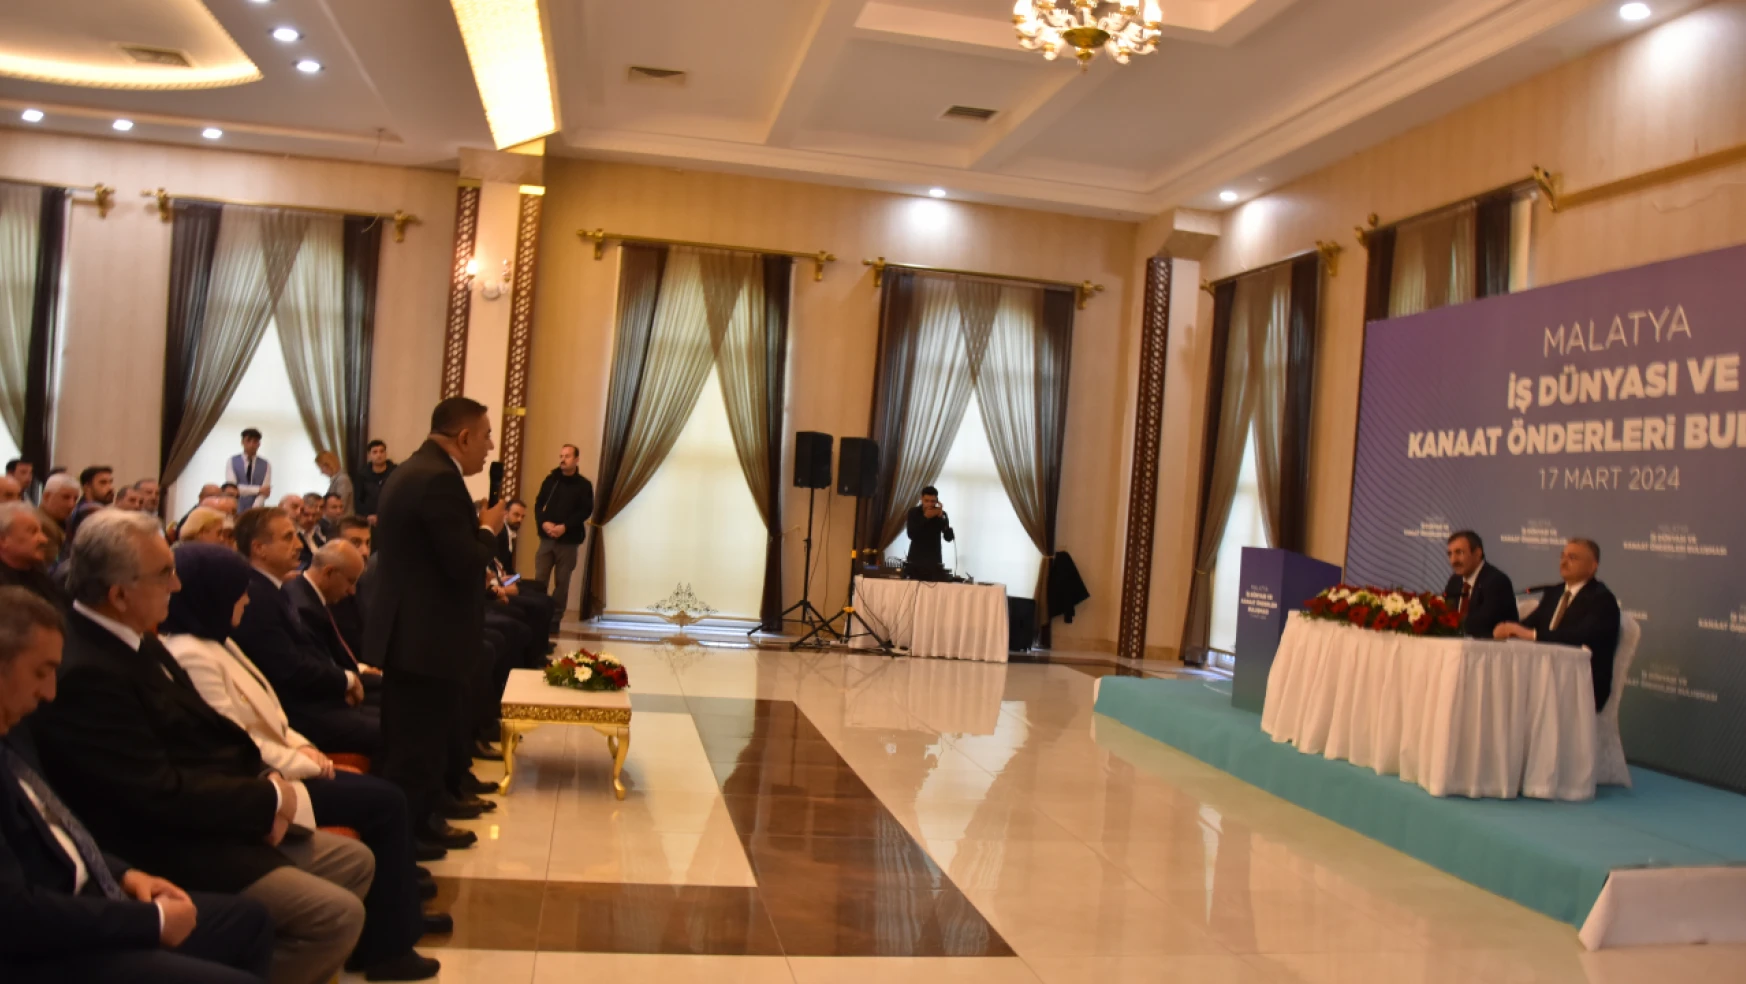 Başkan Sadıkoğlu, Malatya'nın sorunlarına hassasiyetle yaklaşılmasını talep etti